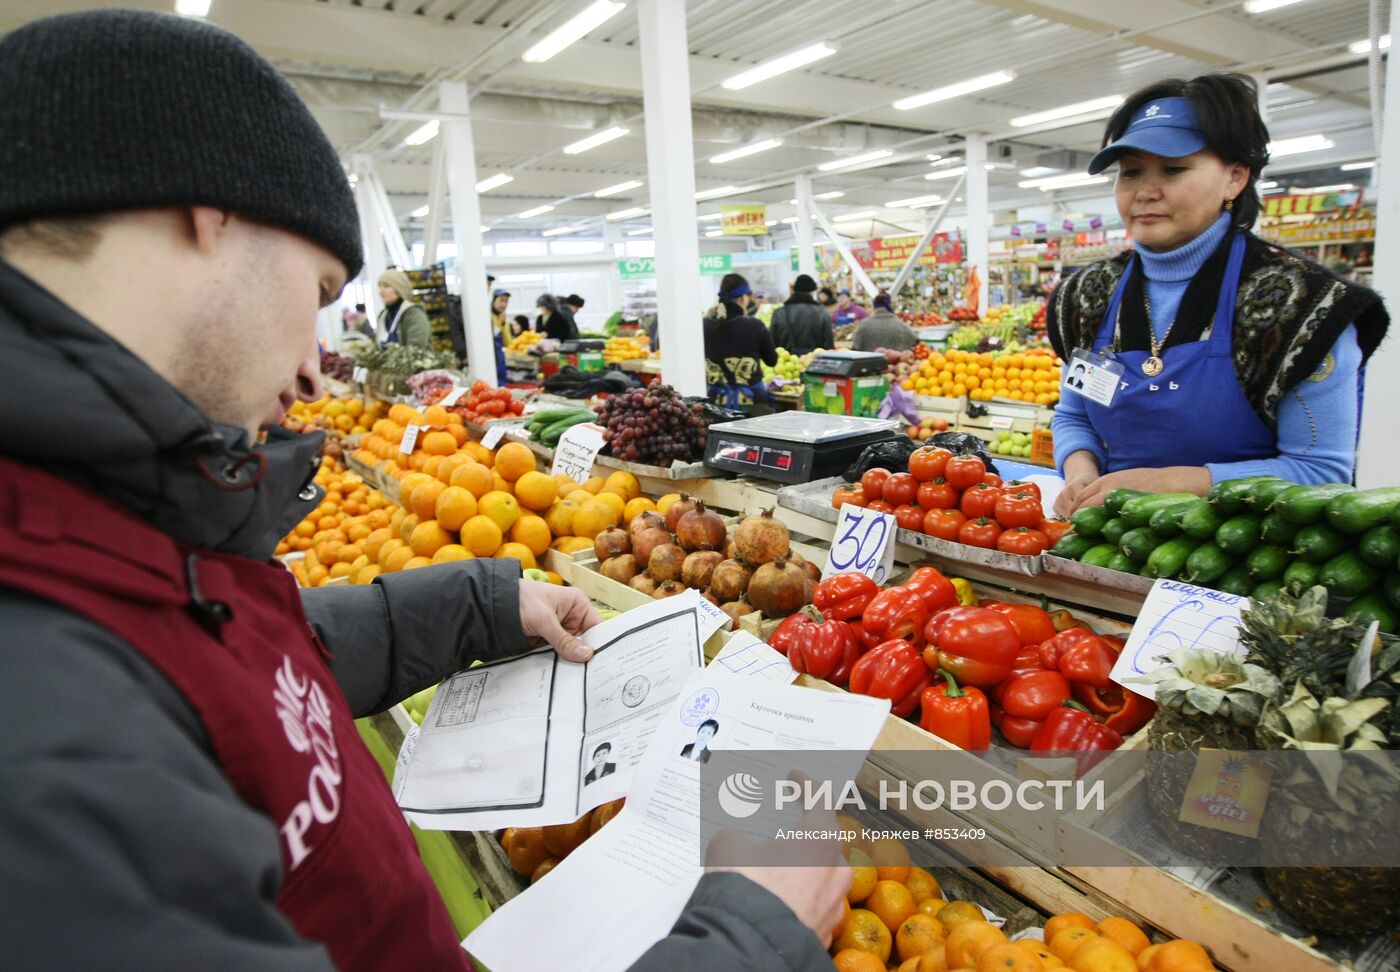 ФМС Новосибирской области провела рейд на рынке в Новосибирске